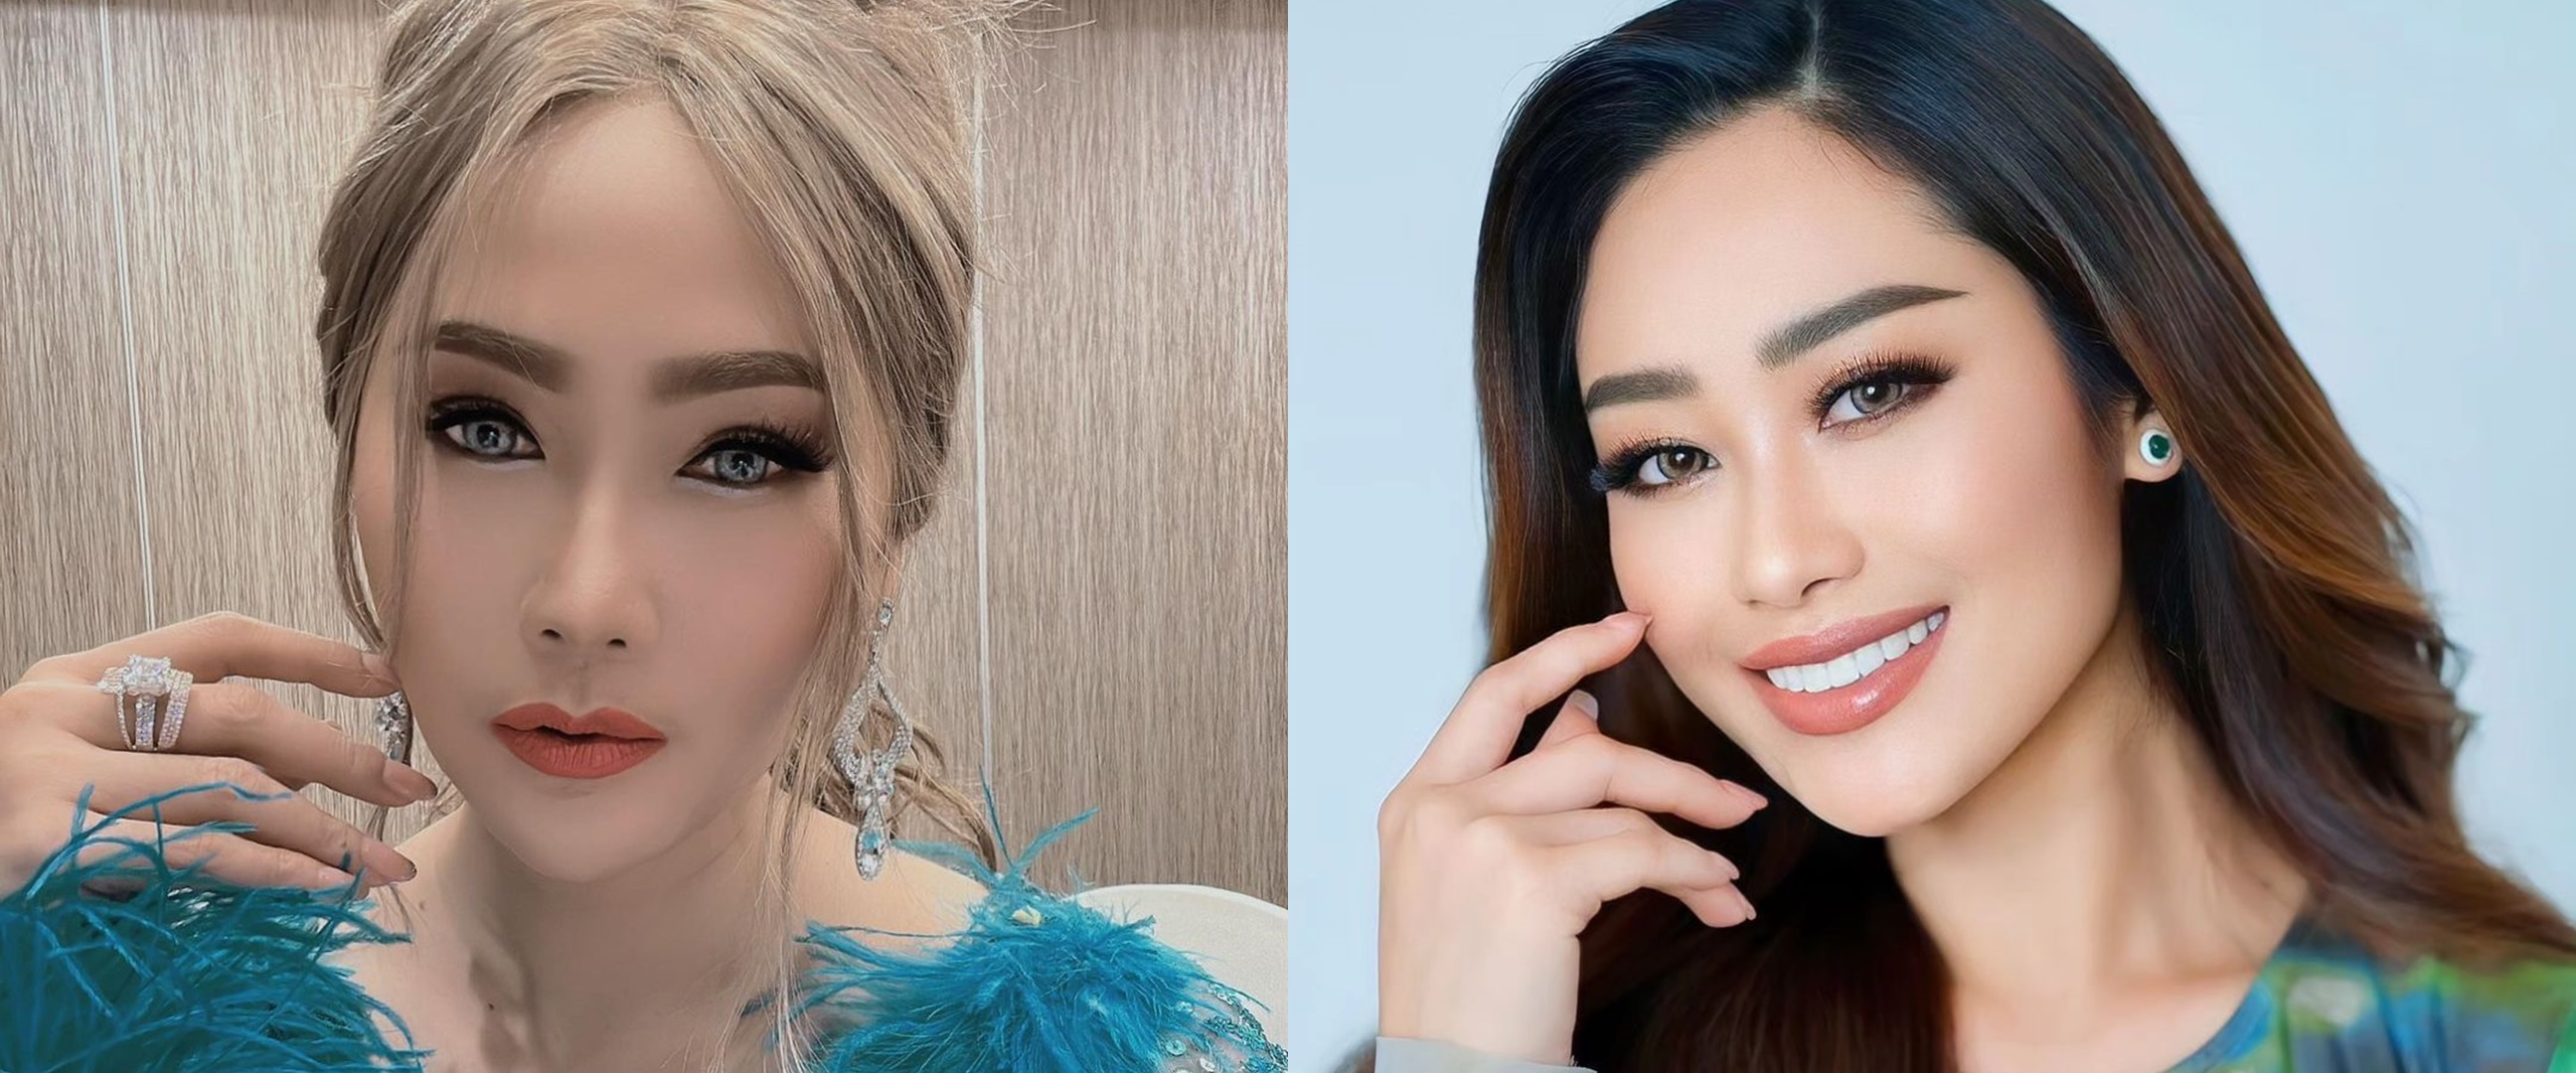 Poppy Capella terseret kasus Miss Universe Indonesia, Inul Daratista bantah sang biduan keponakannya